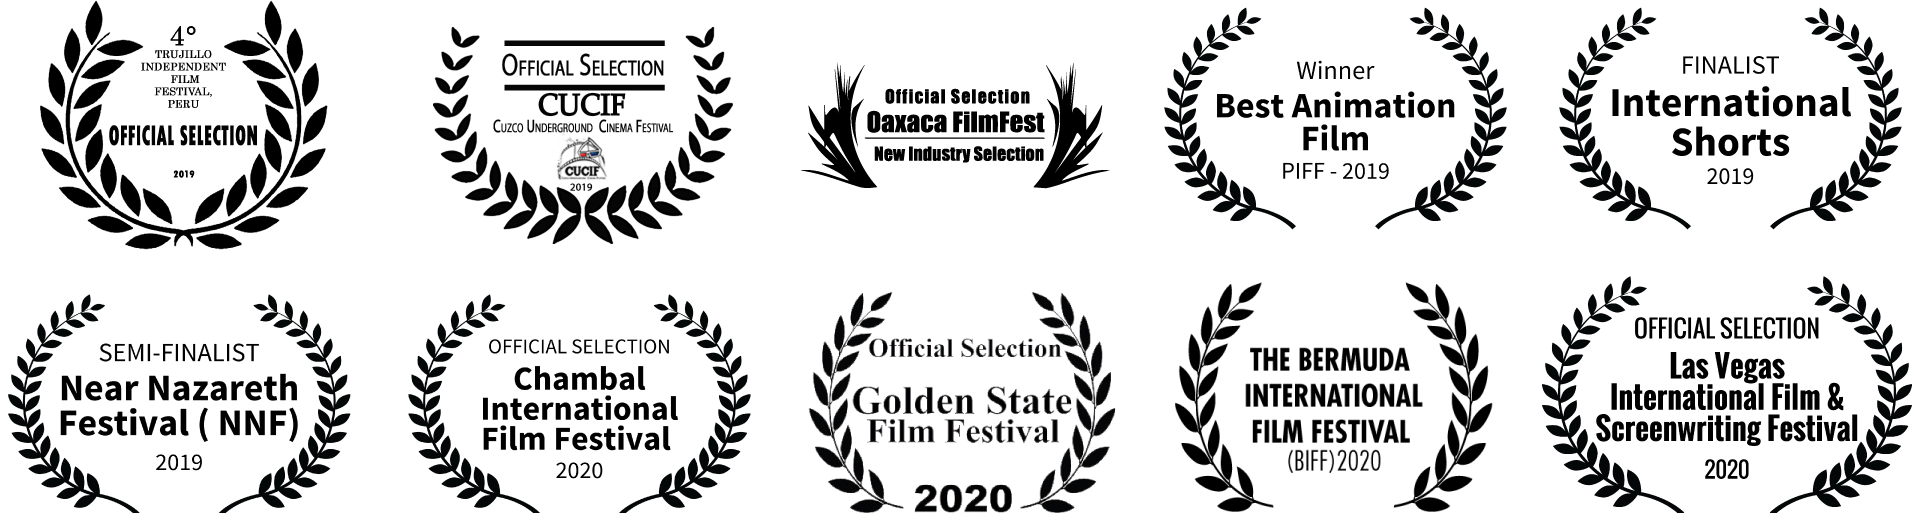 Siggy Brat - film festival laurels 2019/2020